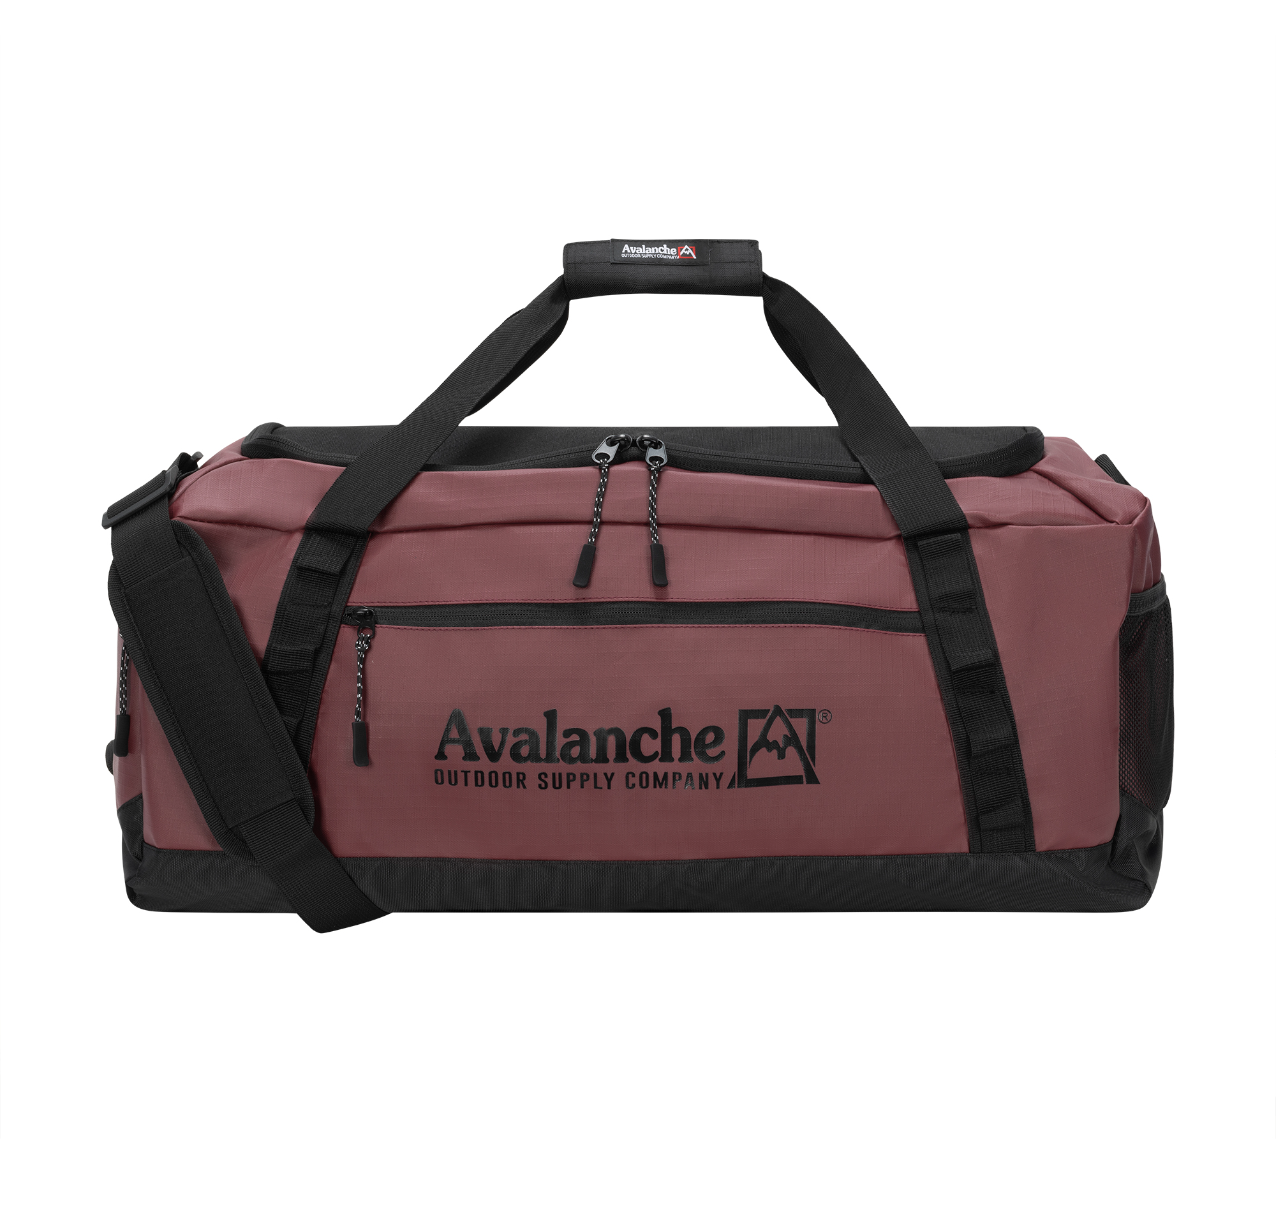 Avalanche Outdoor Supply - Avalanche Outdoor Supply Co.